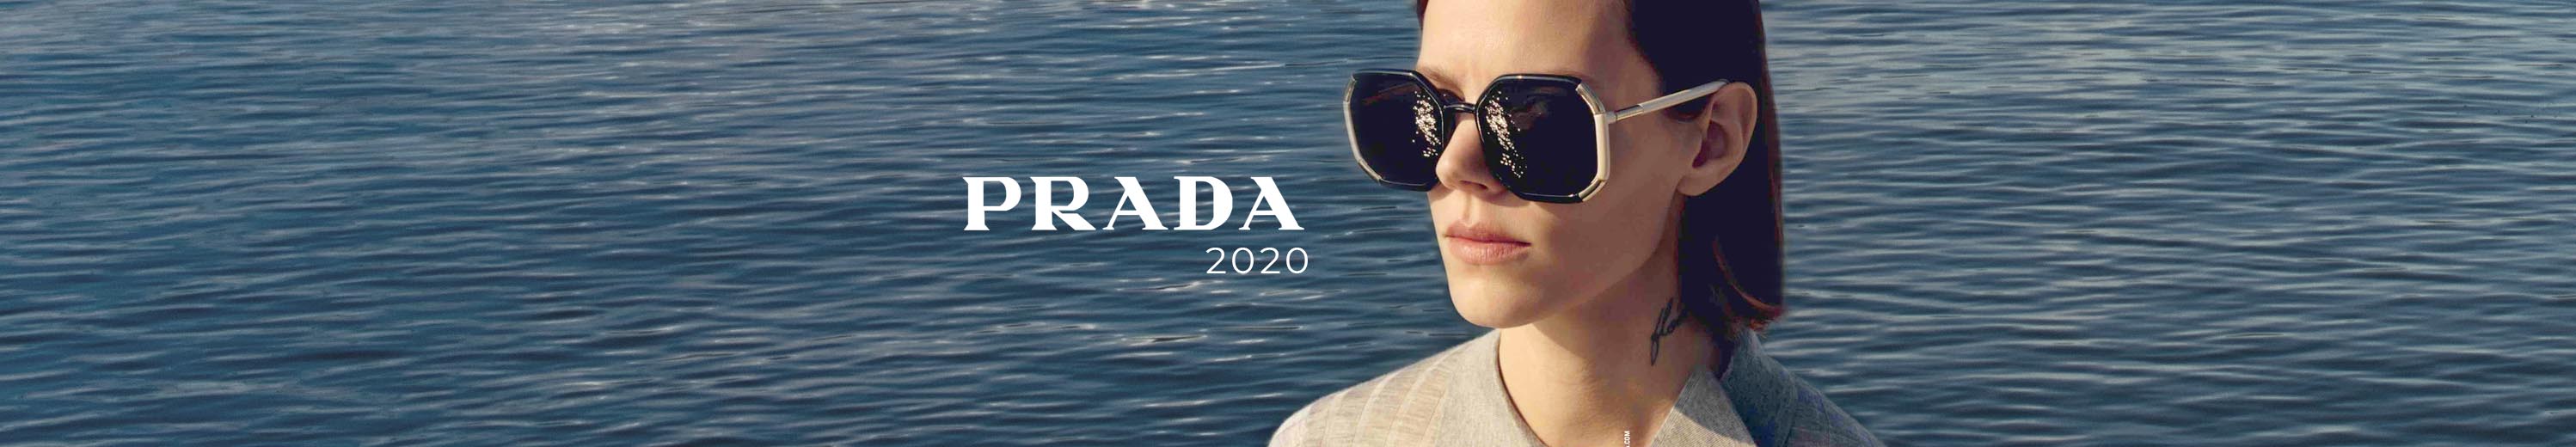 Prada 2020 Eyewear Collection